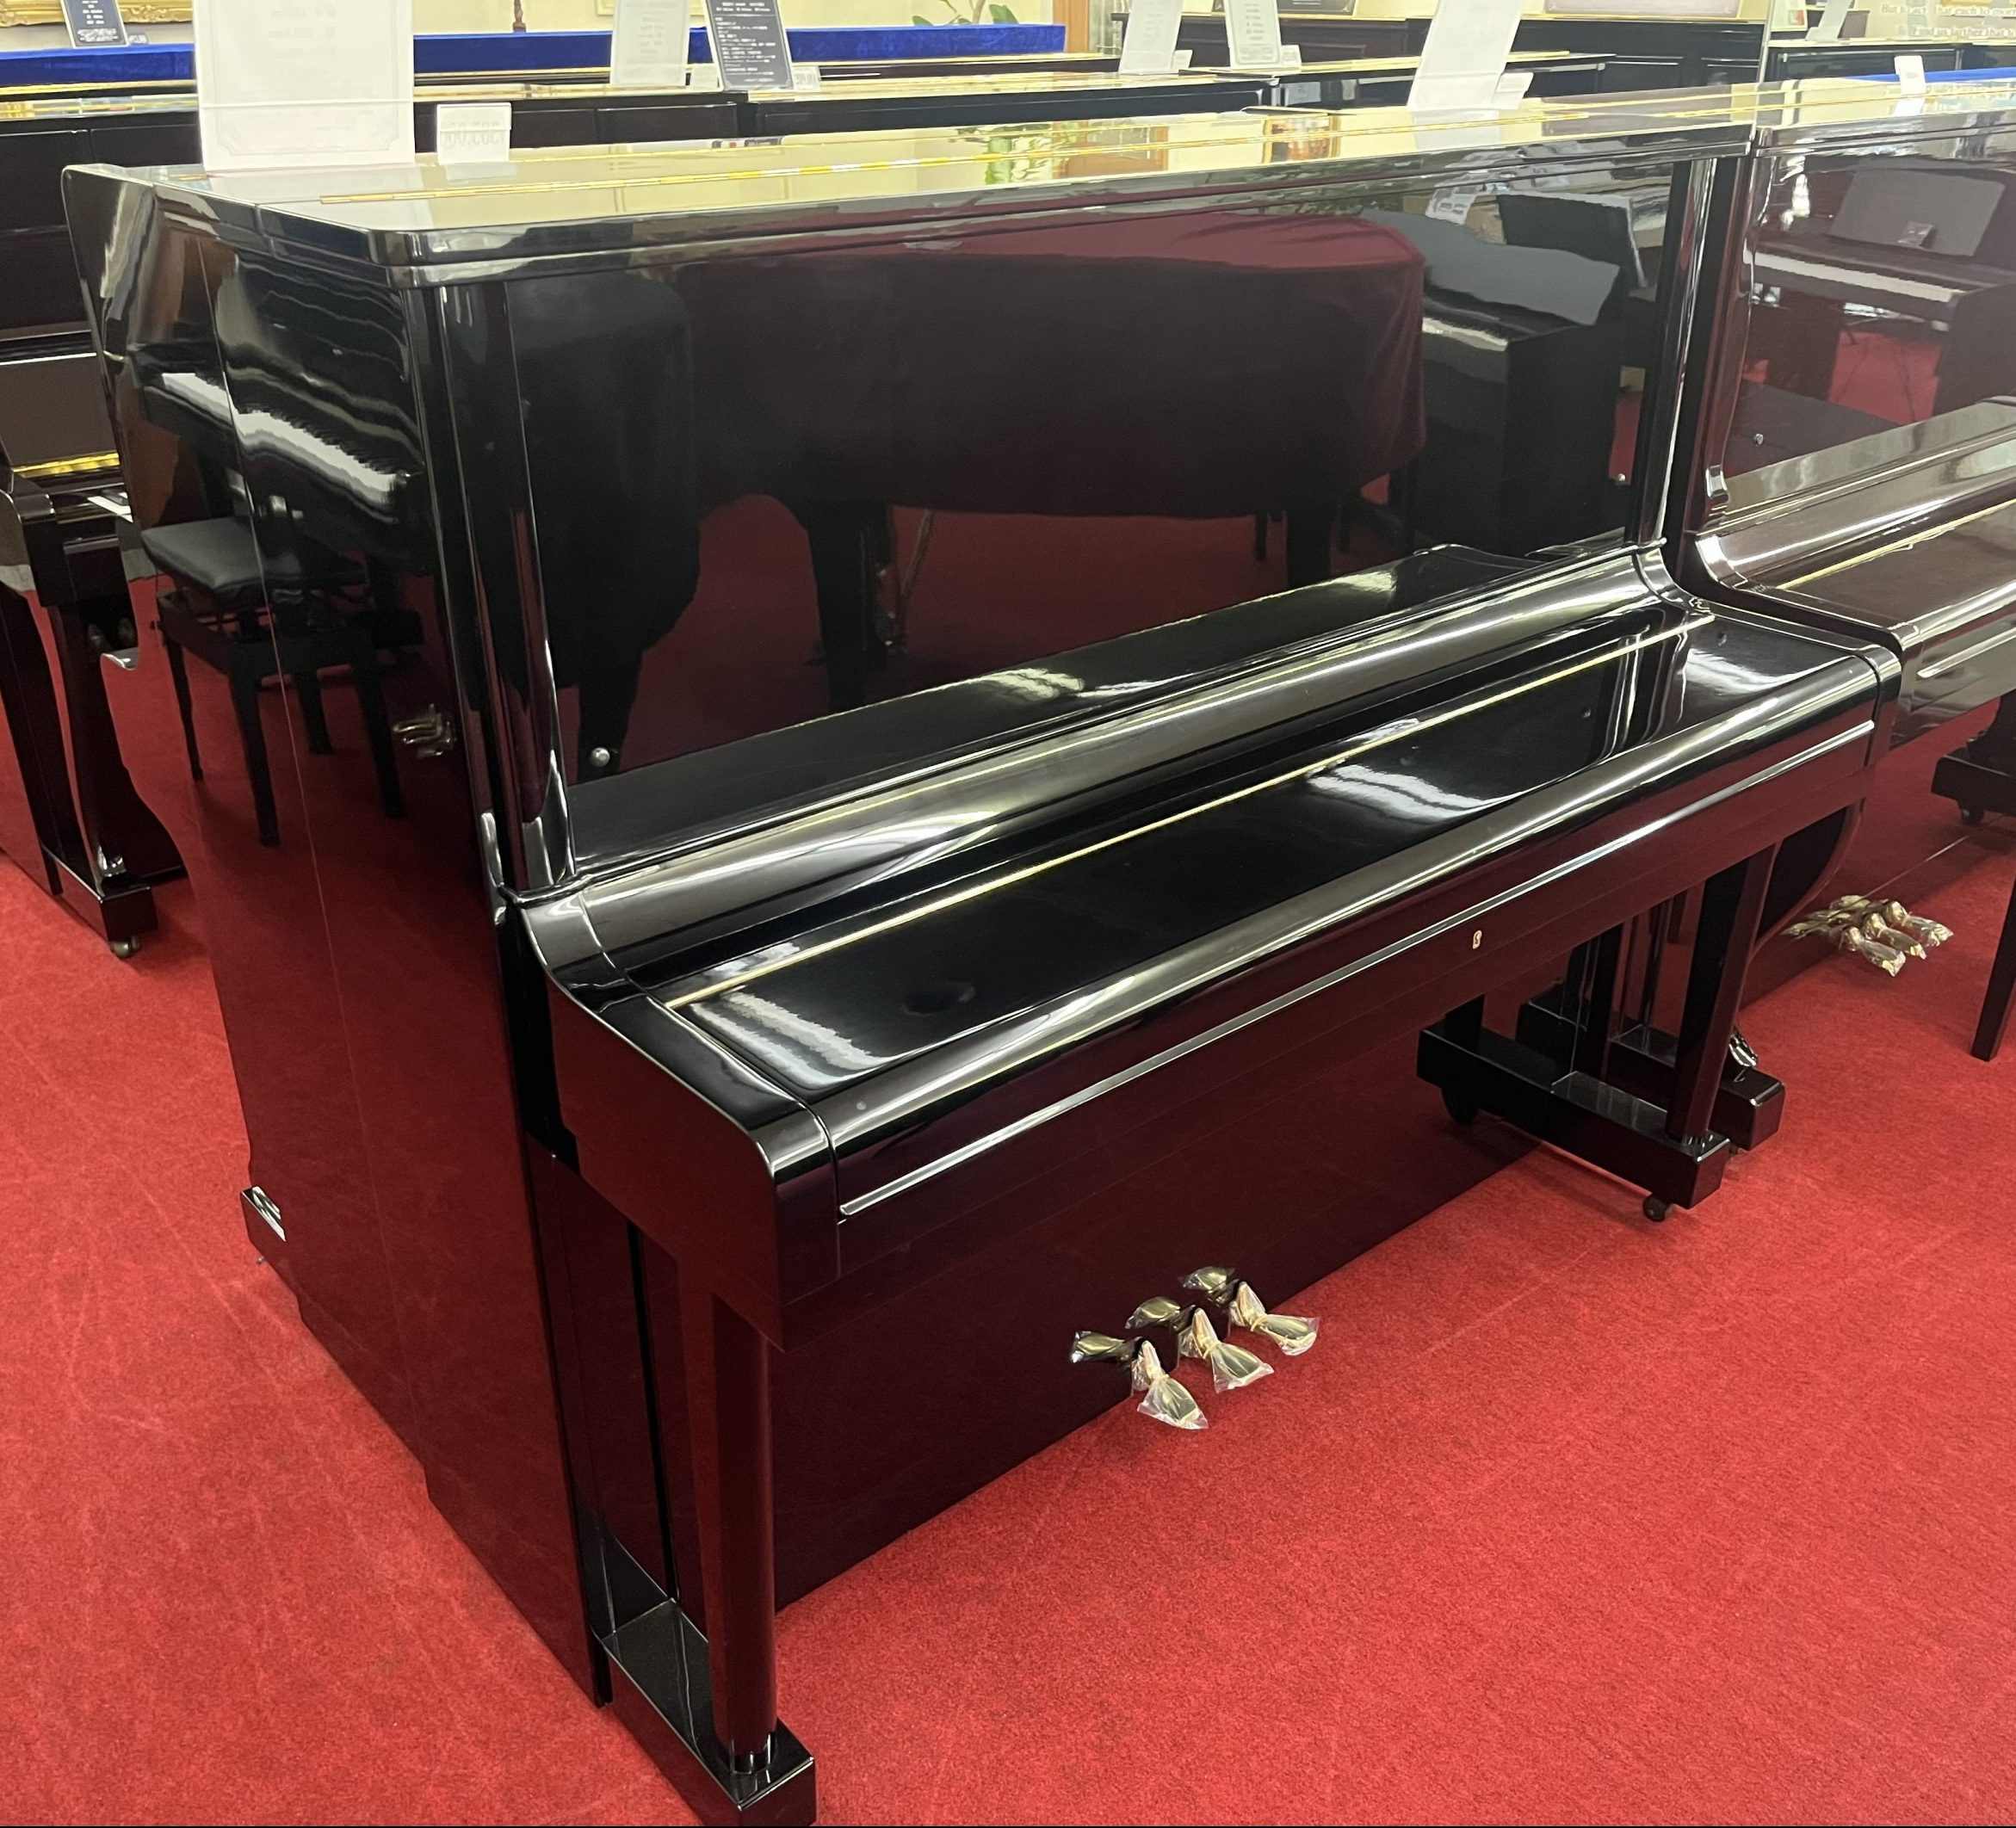 東日本ピアノ製造中古アップライトピアノ GERSHWIN G500B